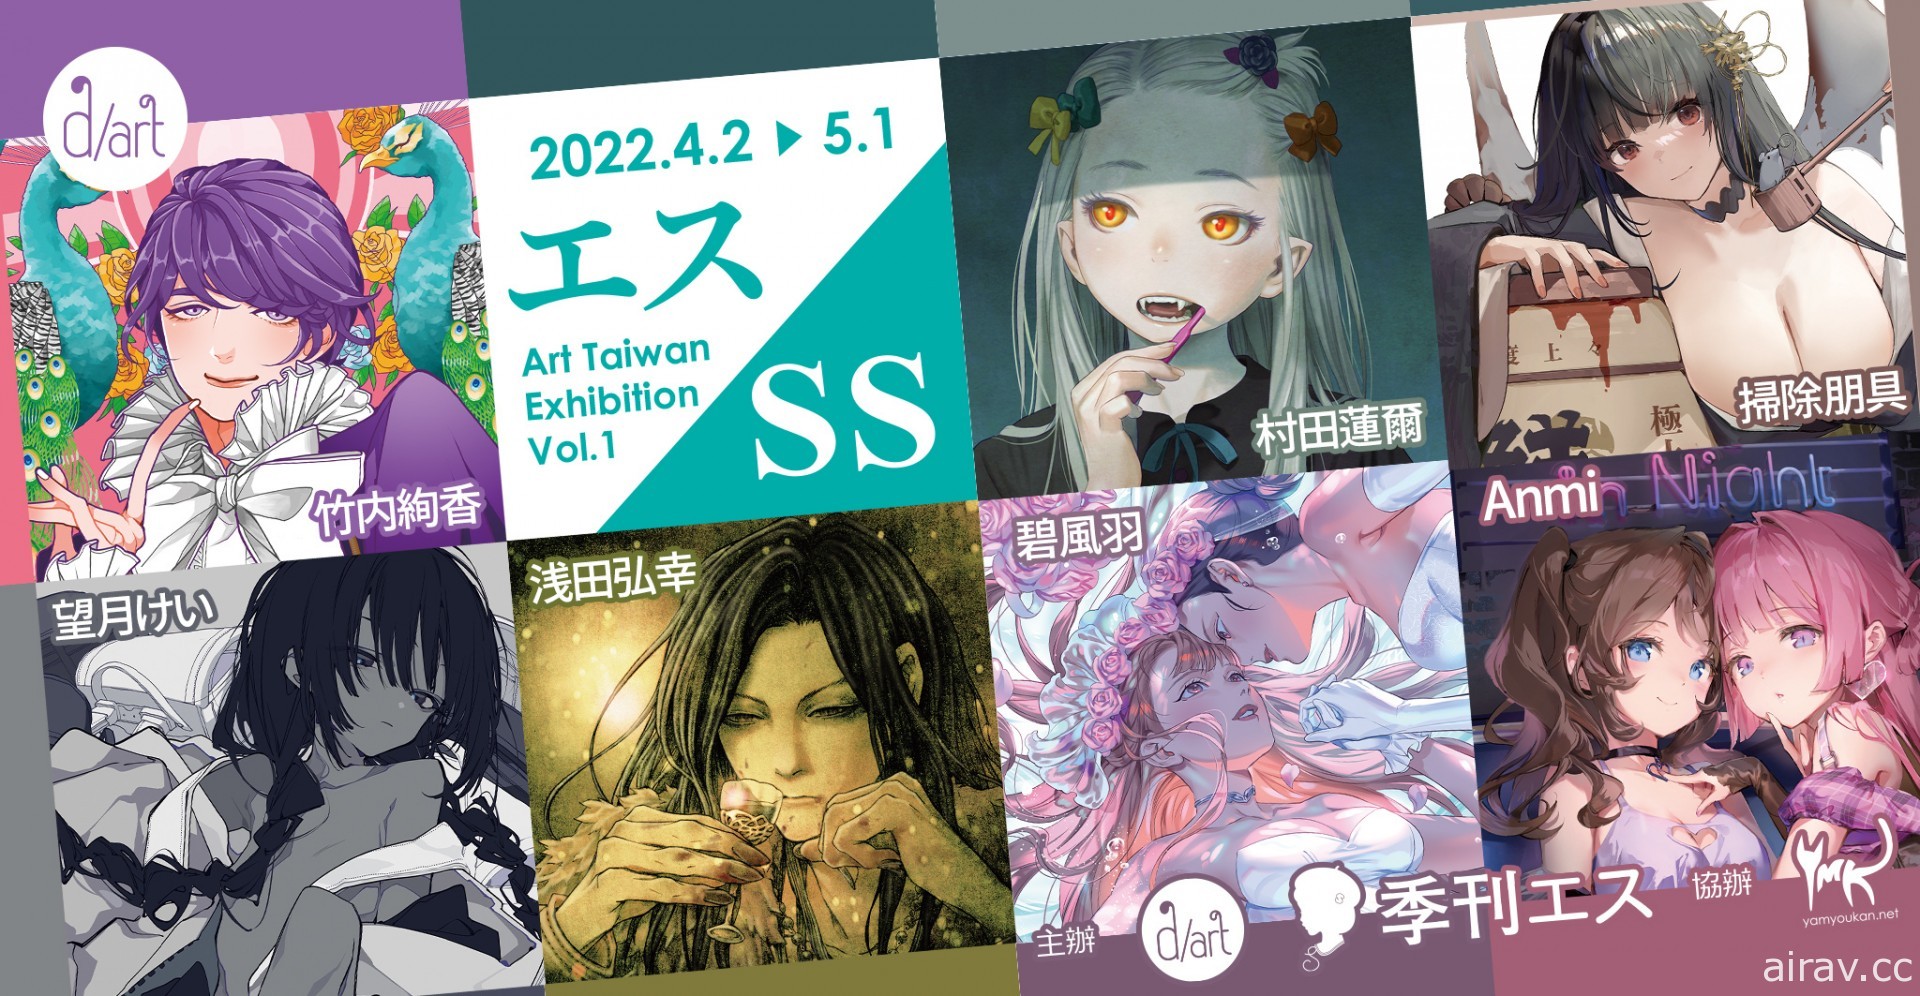 「エス/SS Art Taiwan Exhibition Vol.1」聯展 4 月起於 d/art 正式舉行